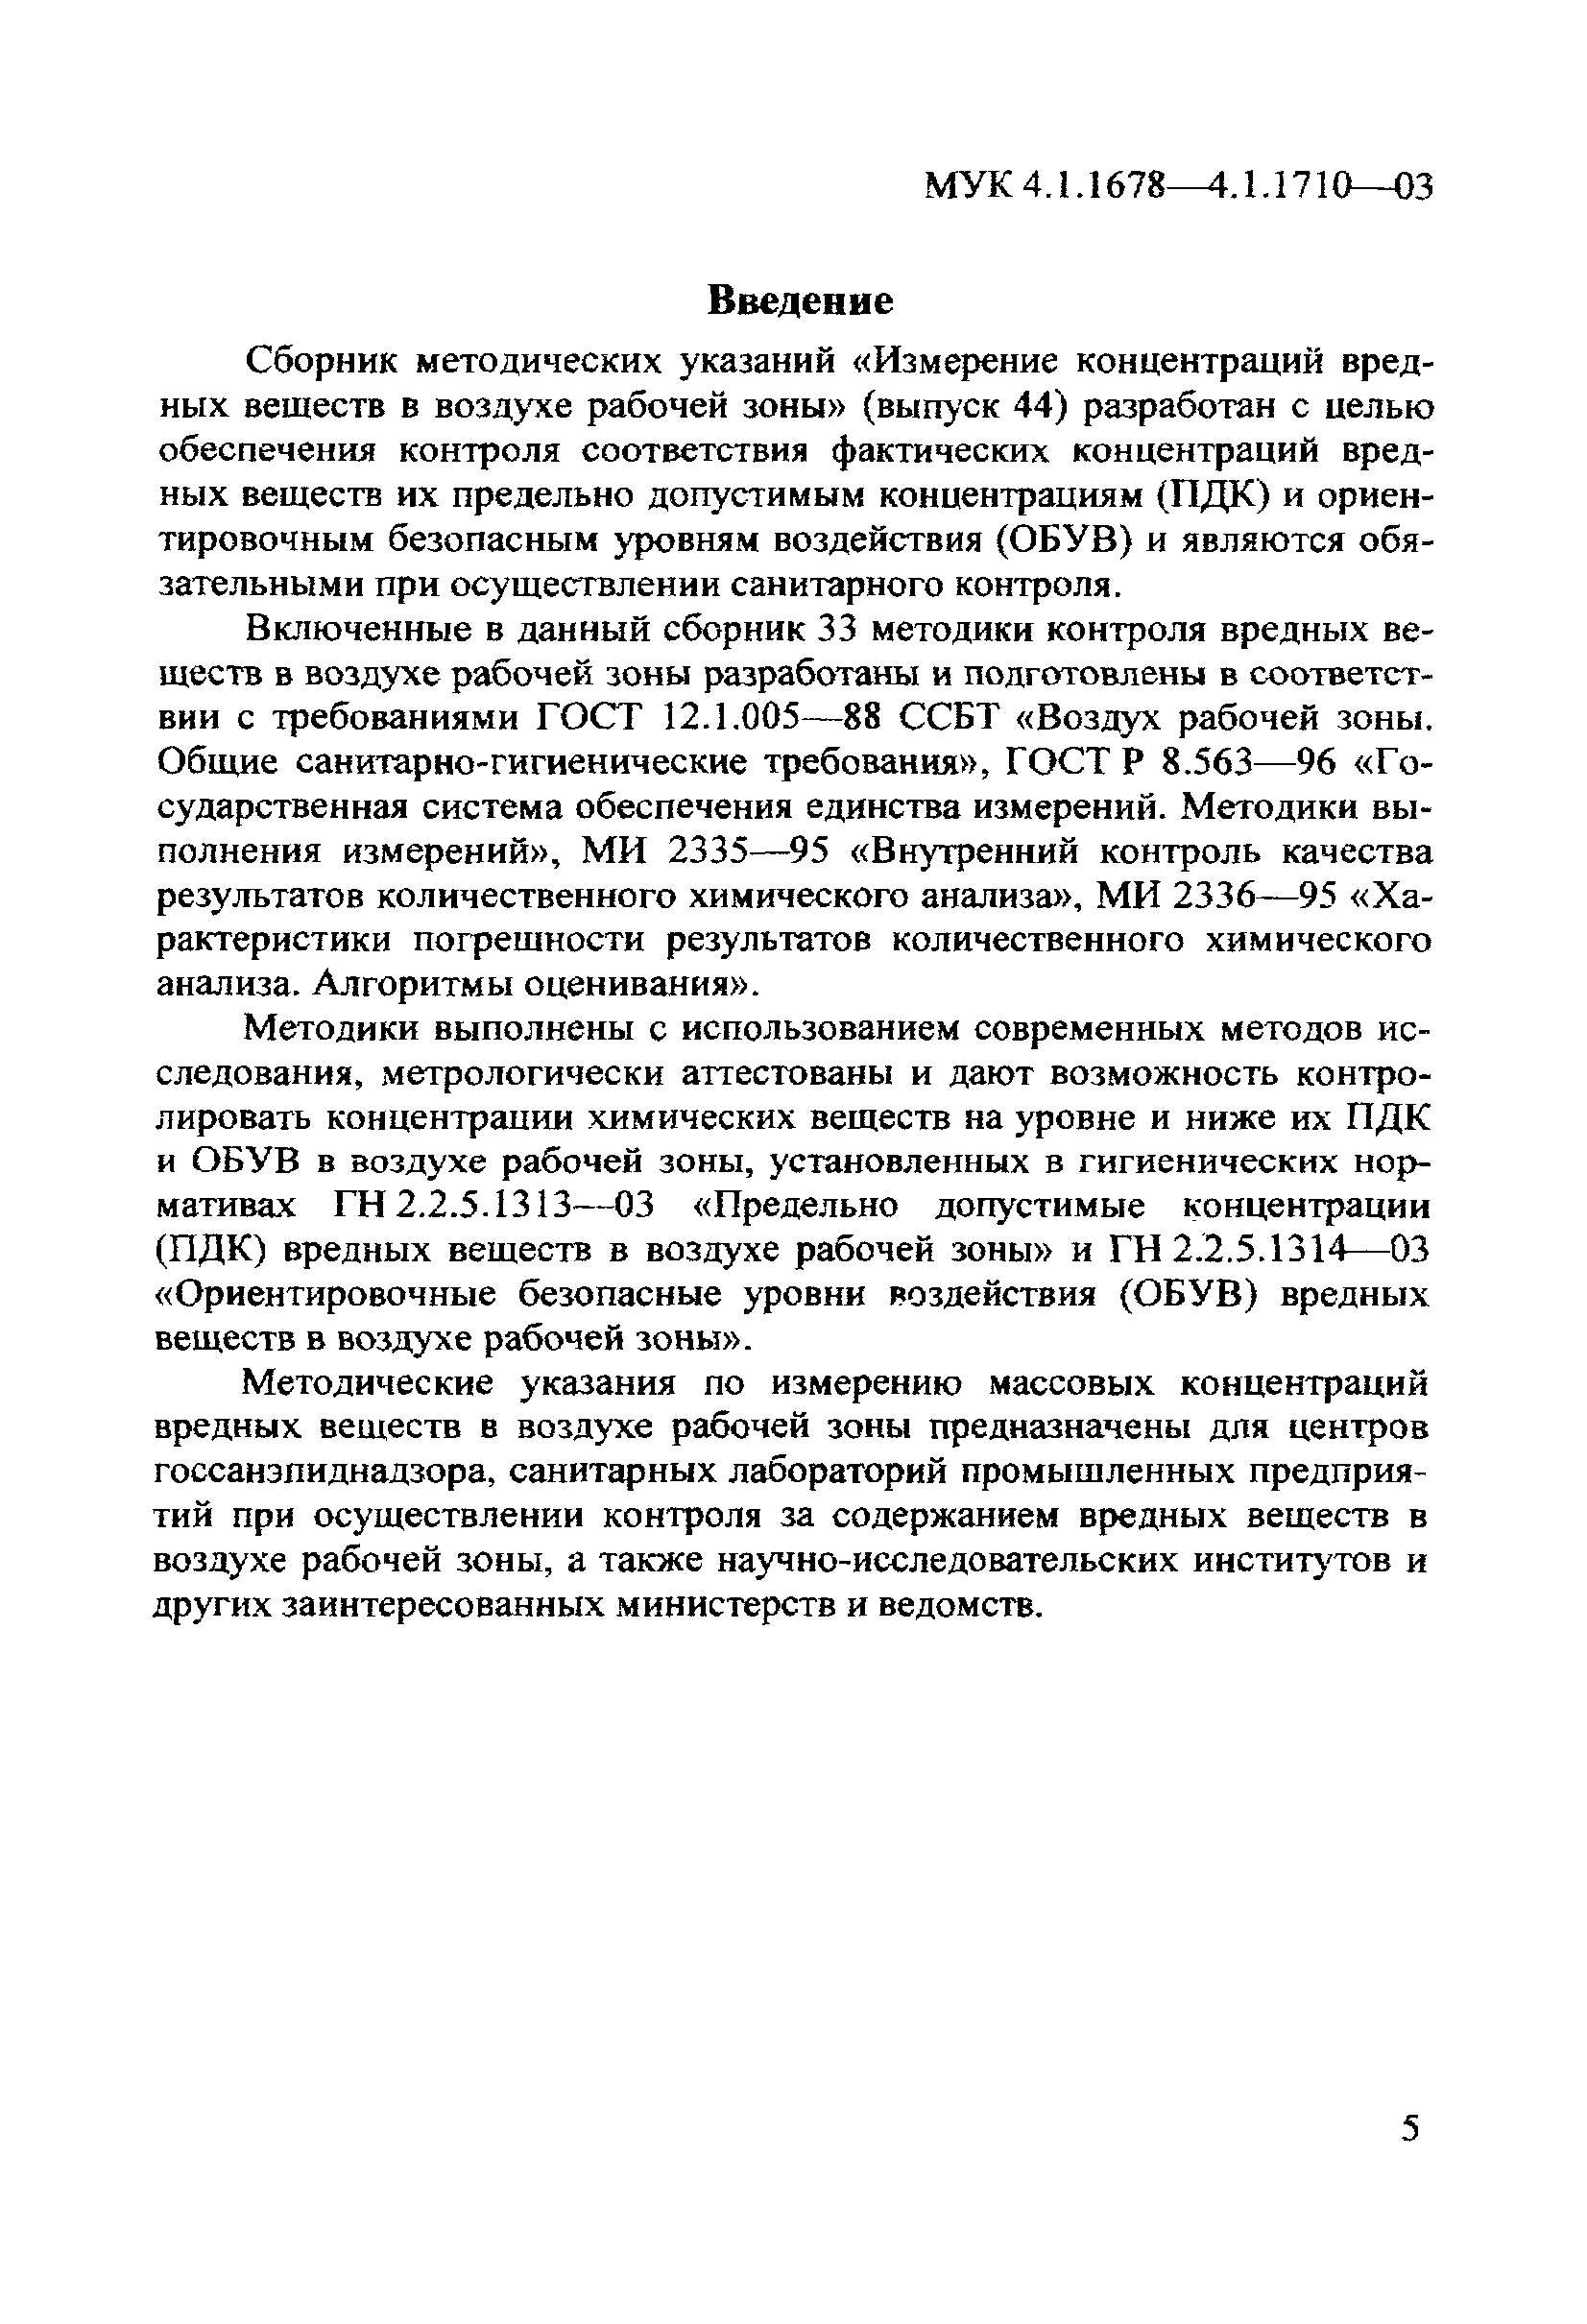 МУК 4.1.1695-03